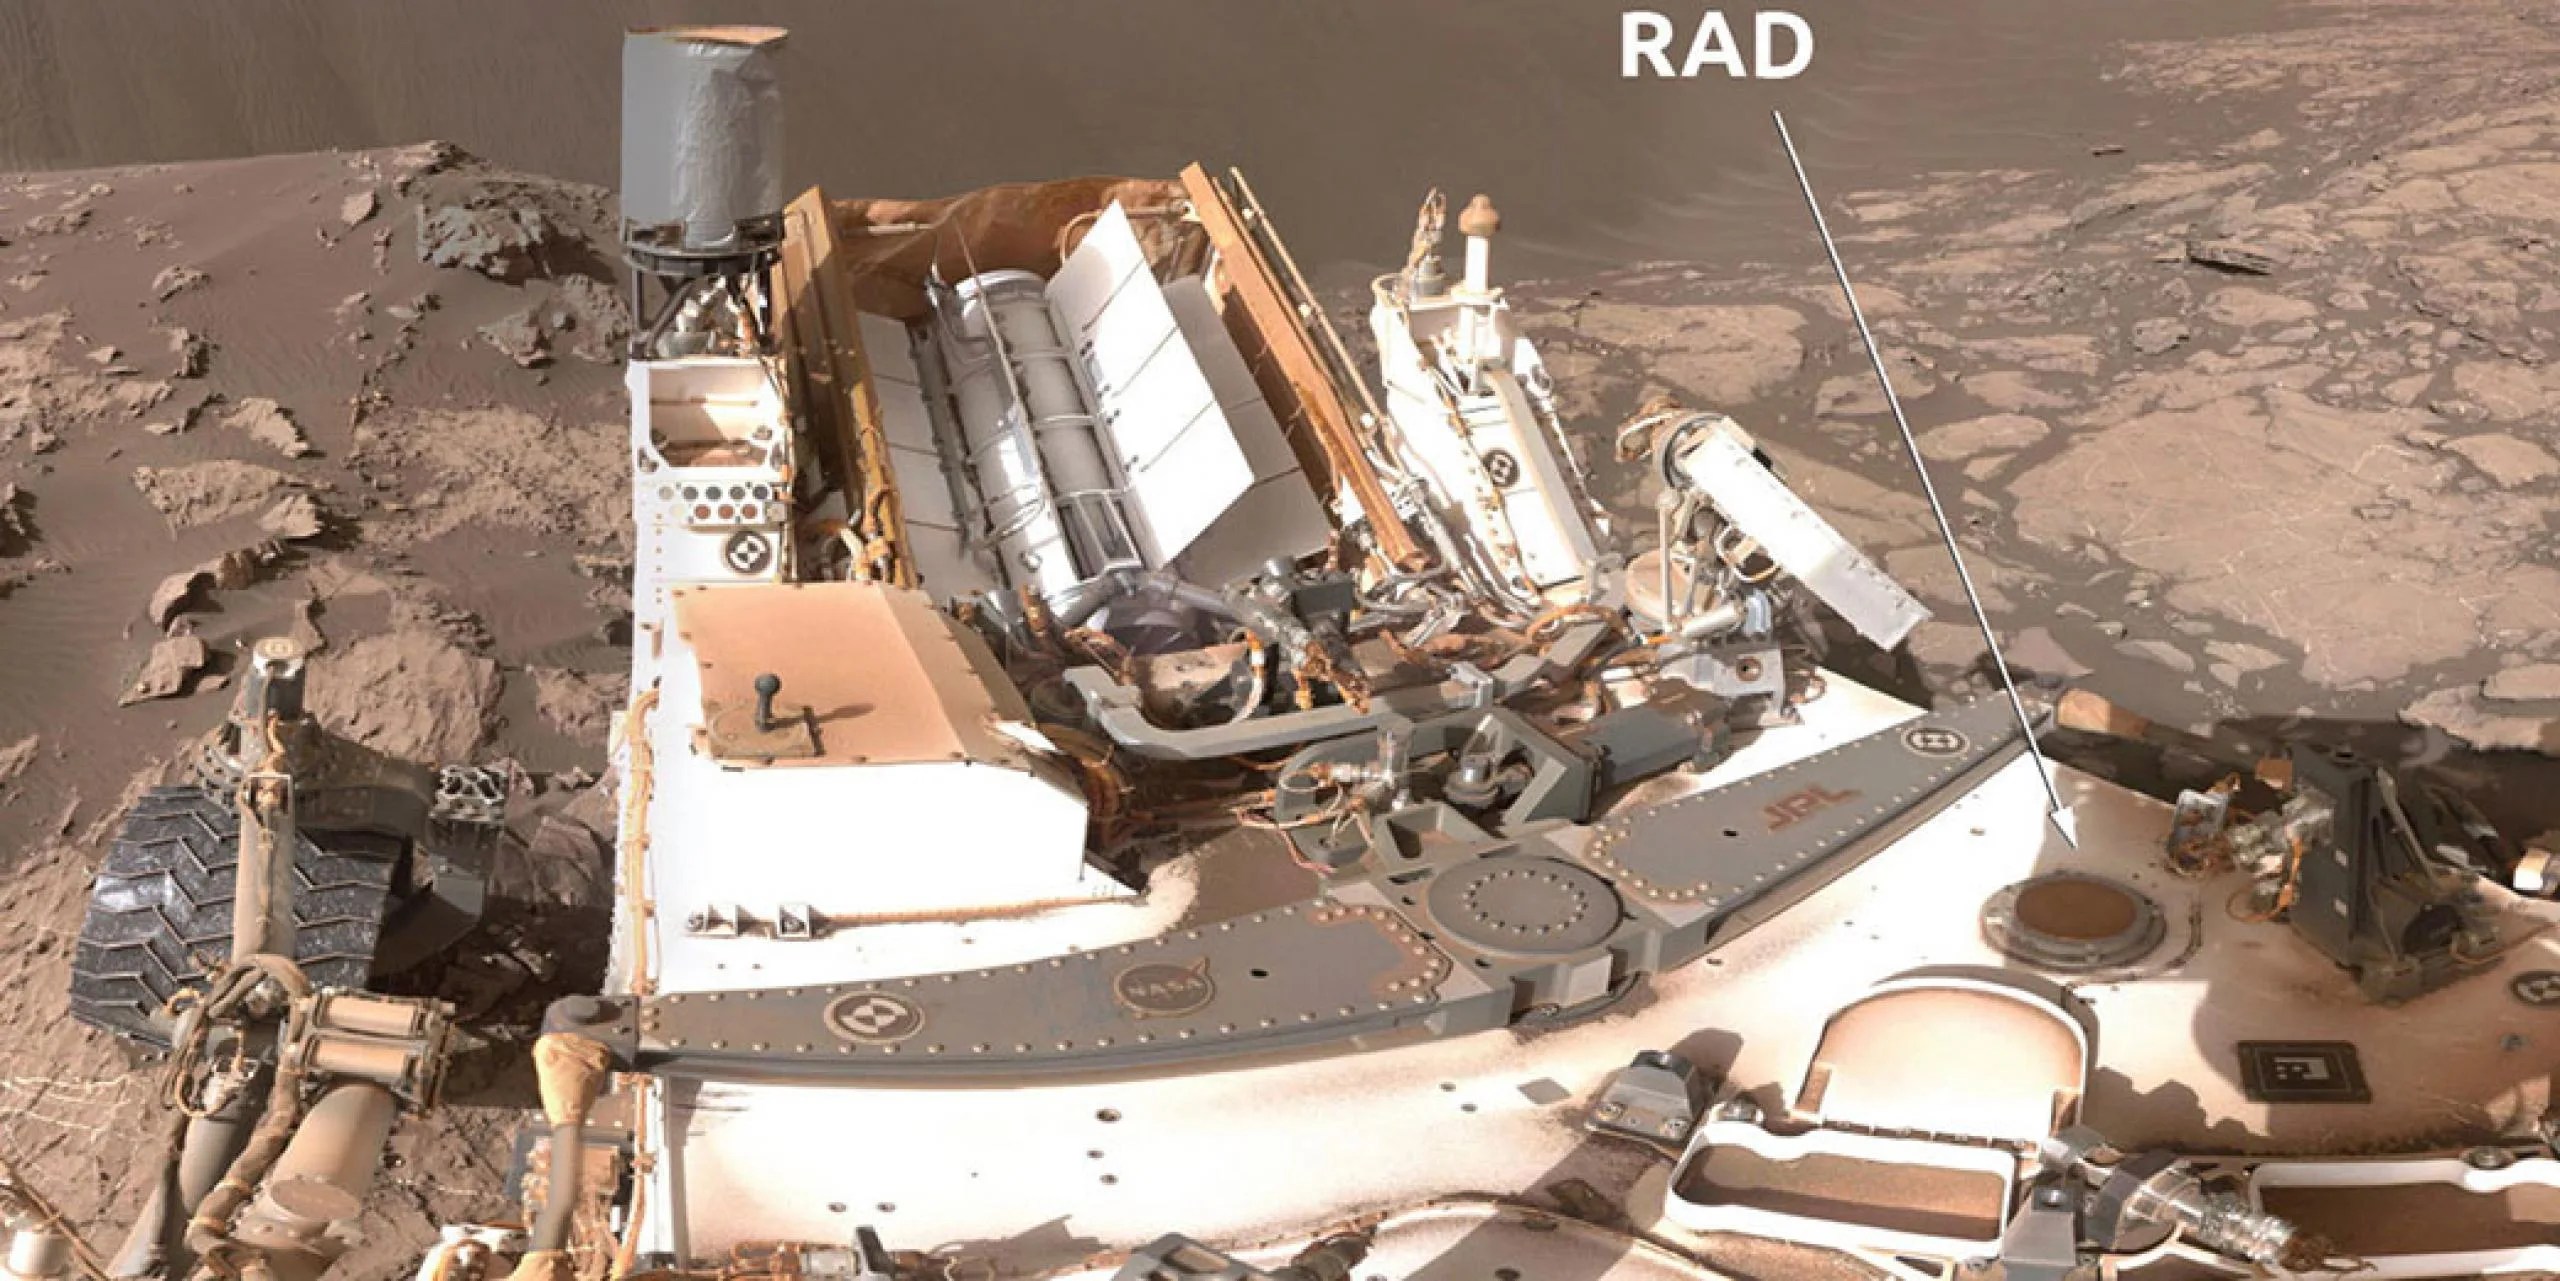 La parte superior del Detector de evaluación de radiación se puede ver en la cubierta del rover Curiosity Mars de la NASA. Créditos: NASA / JPL-Caltech / MSSS